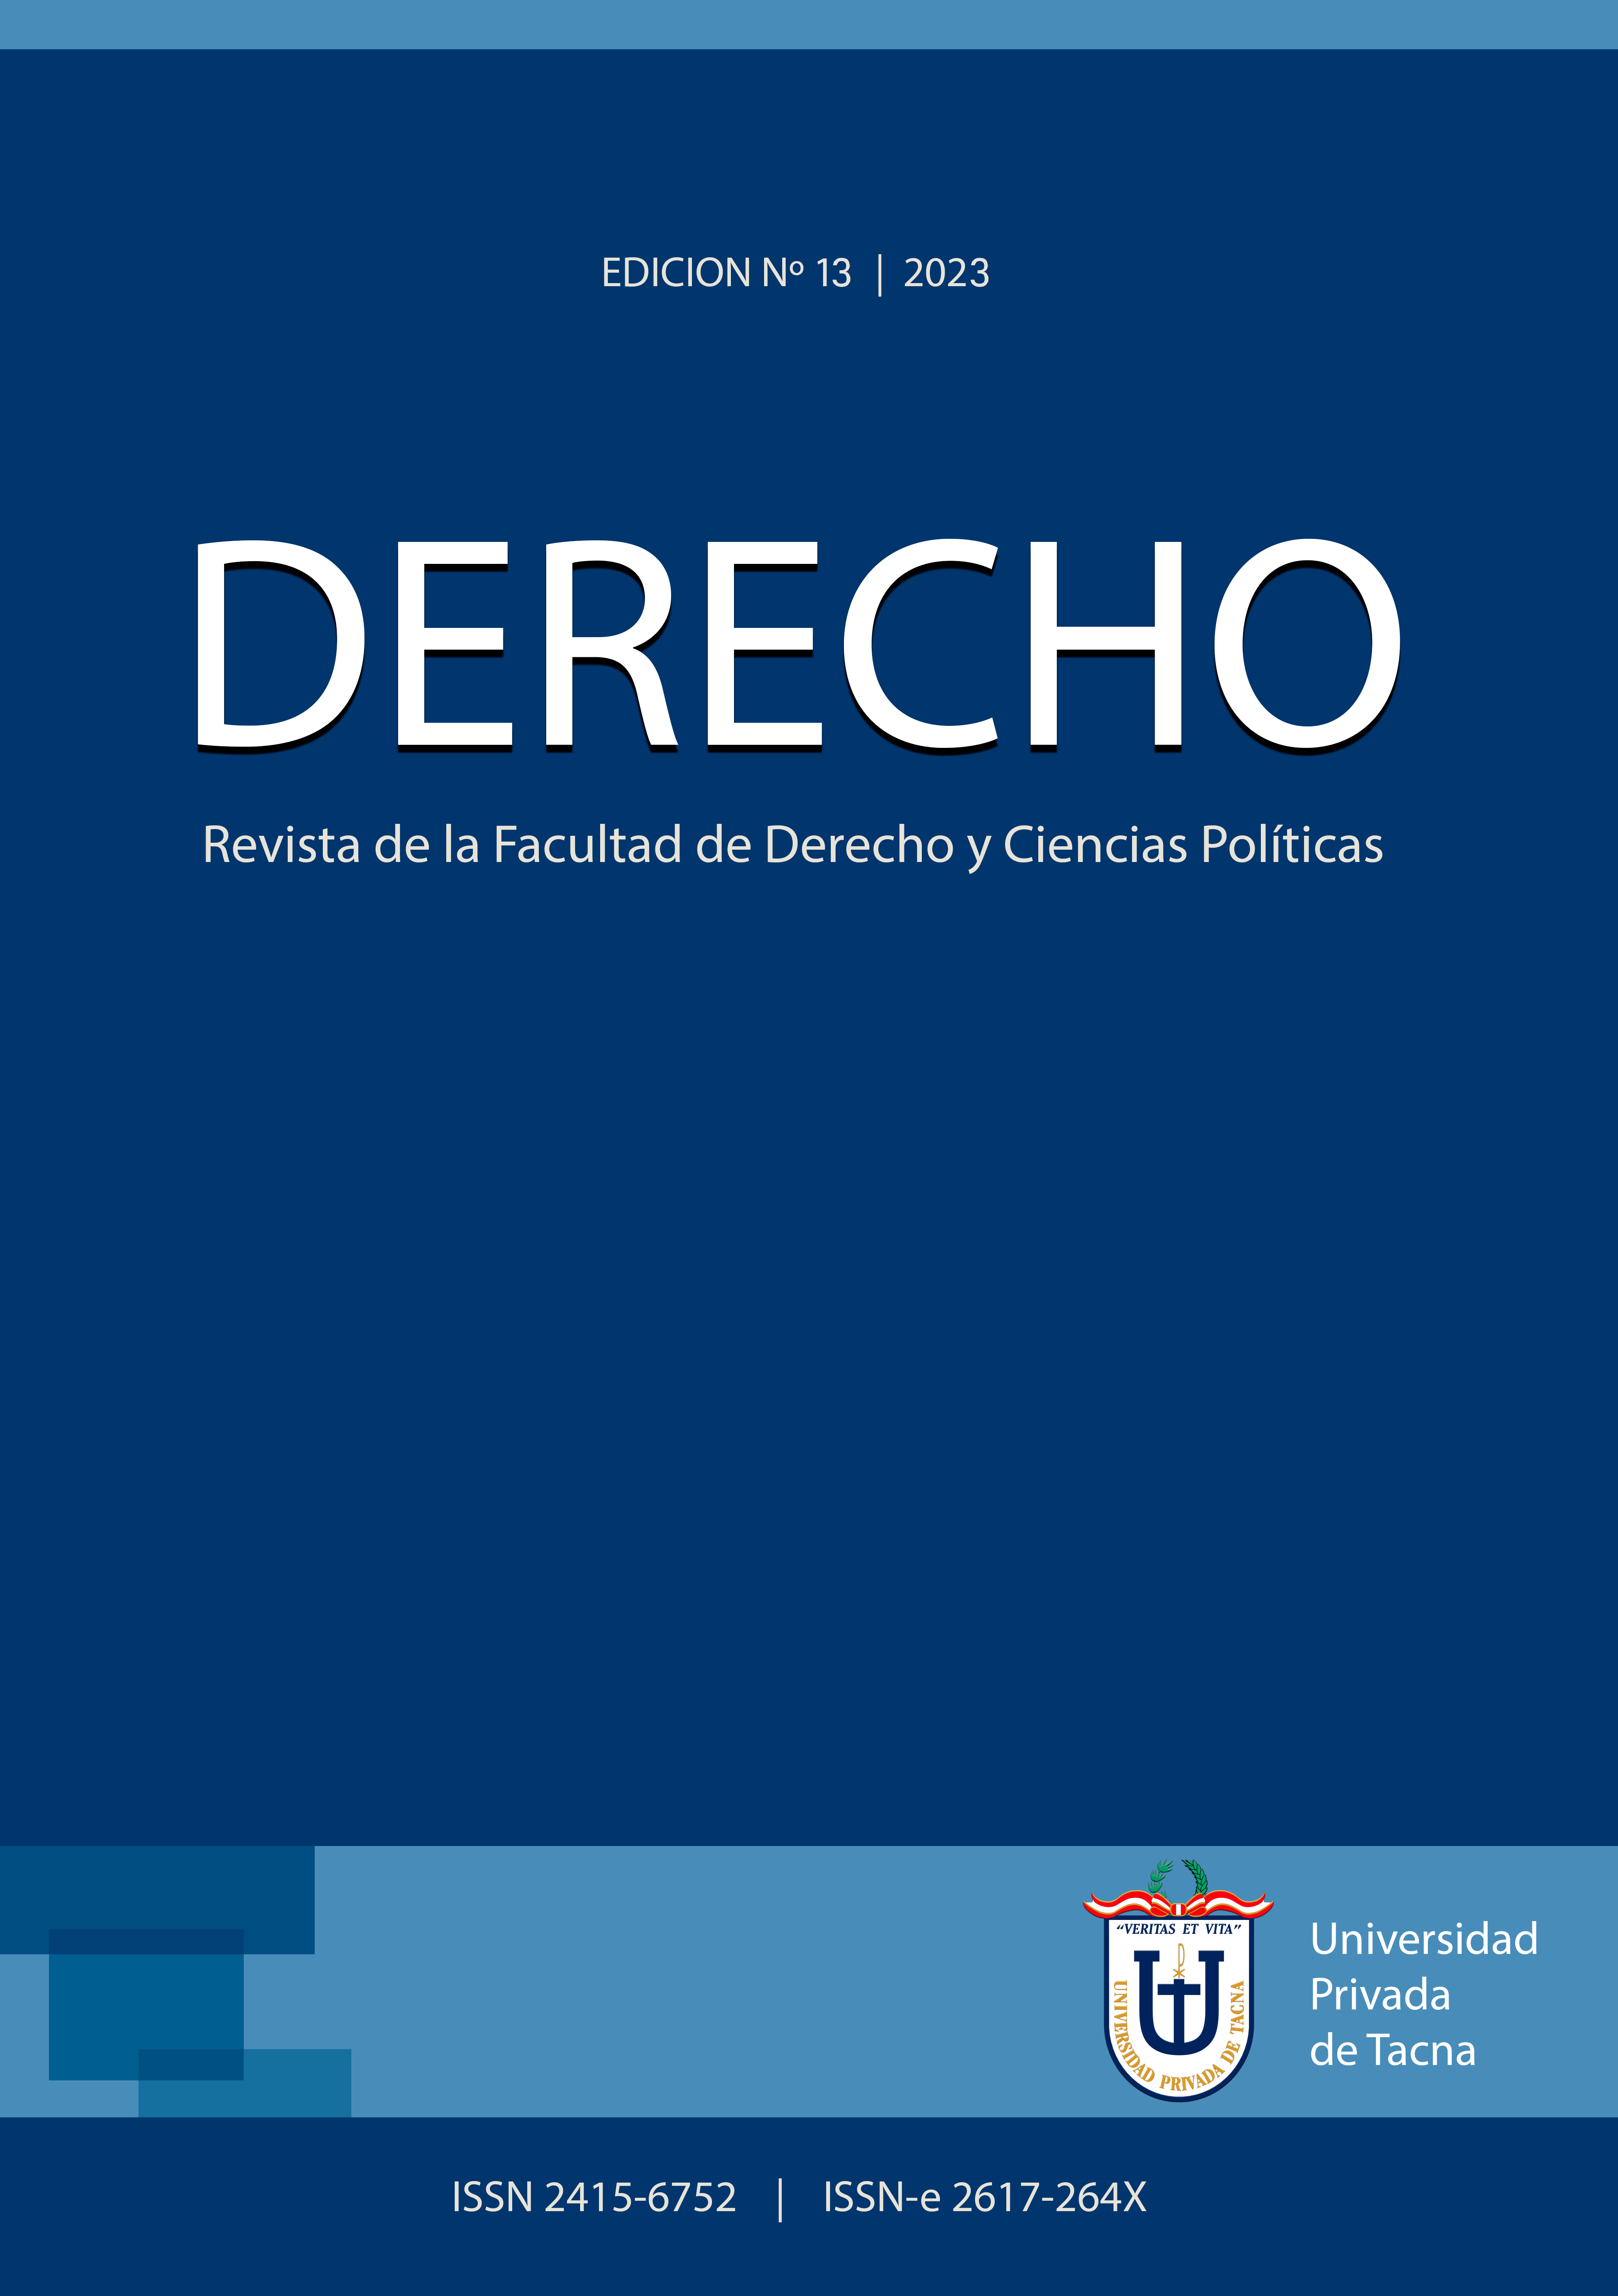 					View Vol. 13 No. 13 (2023): DERECHO: Revista de la Facultad de Derecho y Ciencias Políticas
				